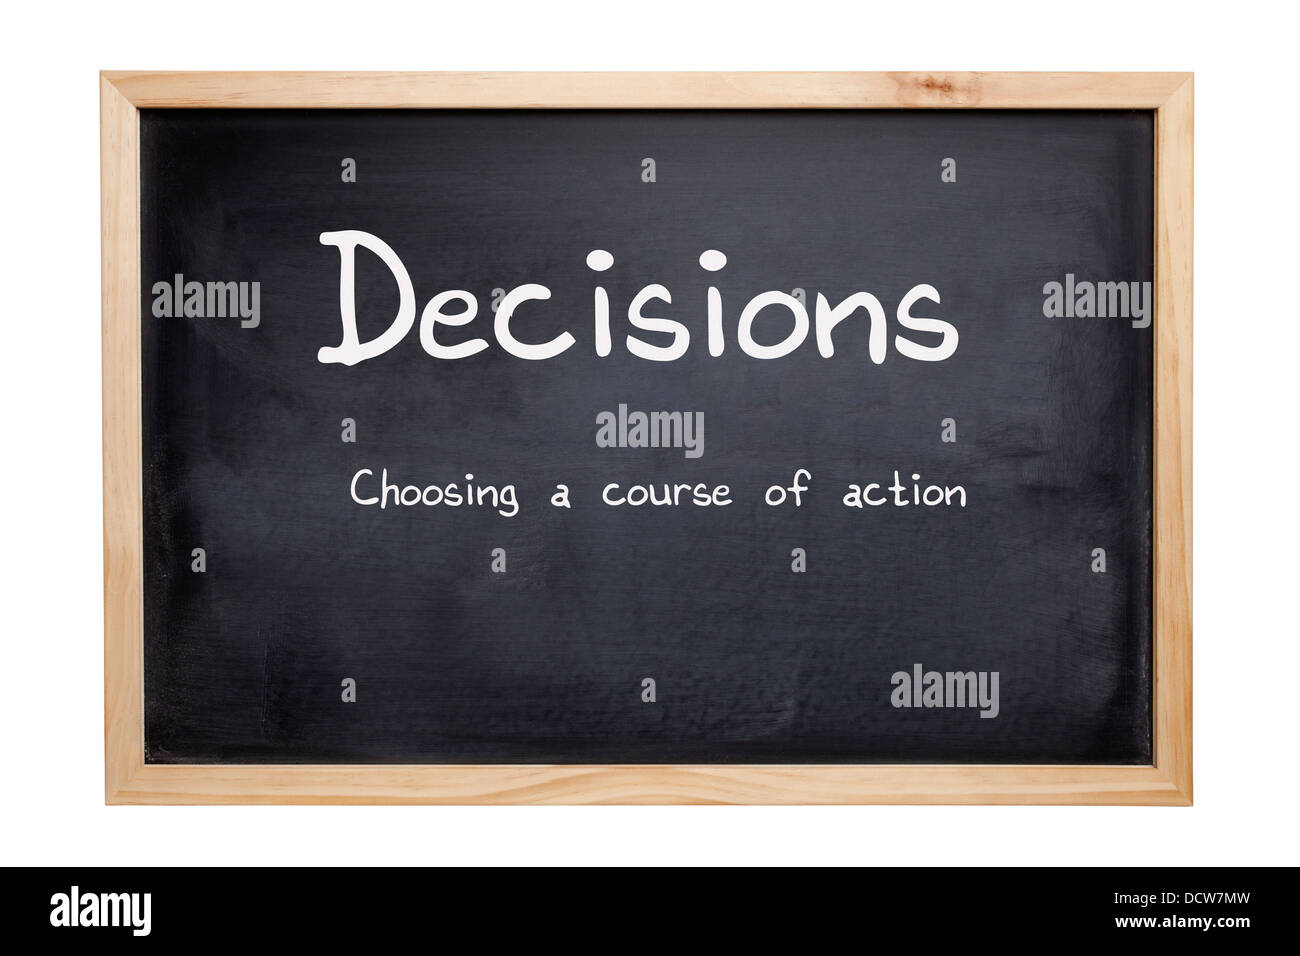 Las decisiones concepto - una pizarra con las palabras descisions, elegir un curso de acción. Trazado de recorte para la junta. Foto de stock